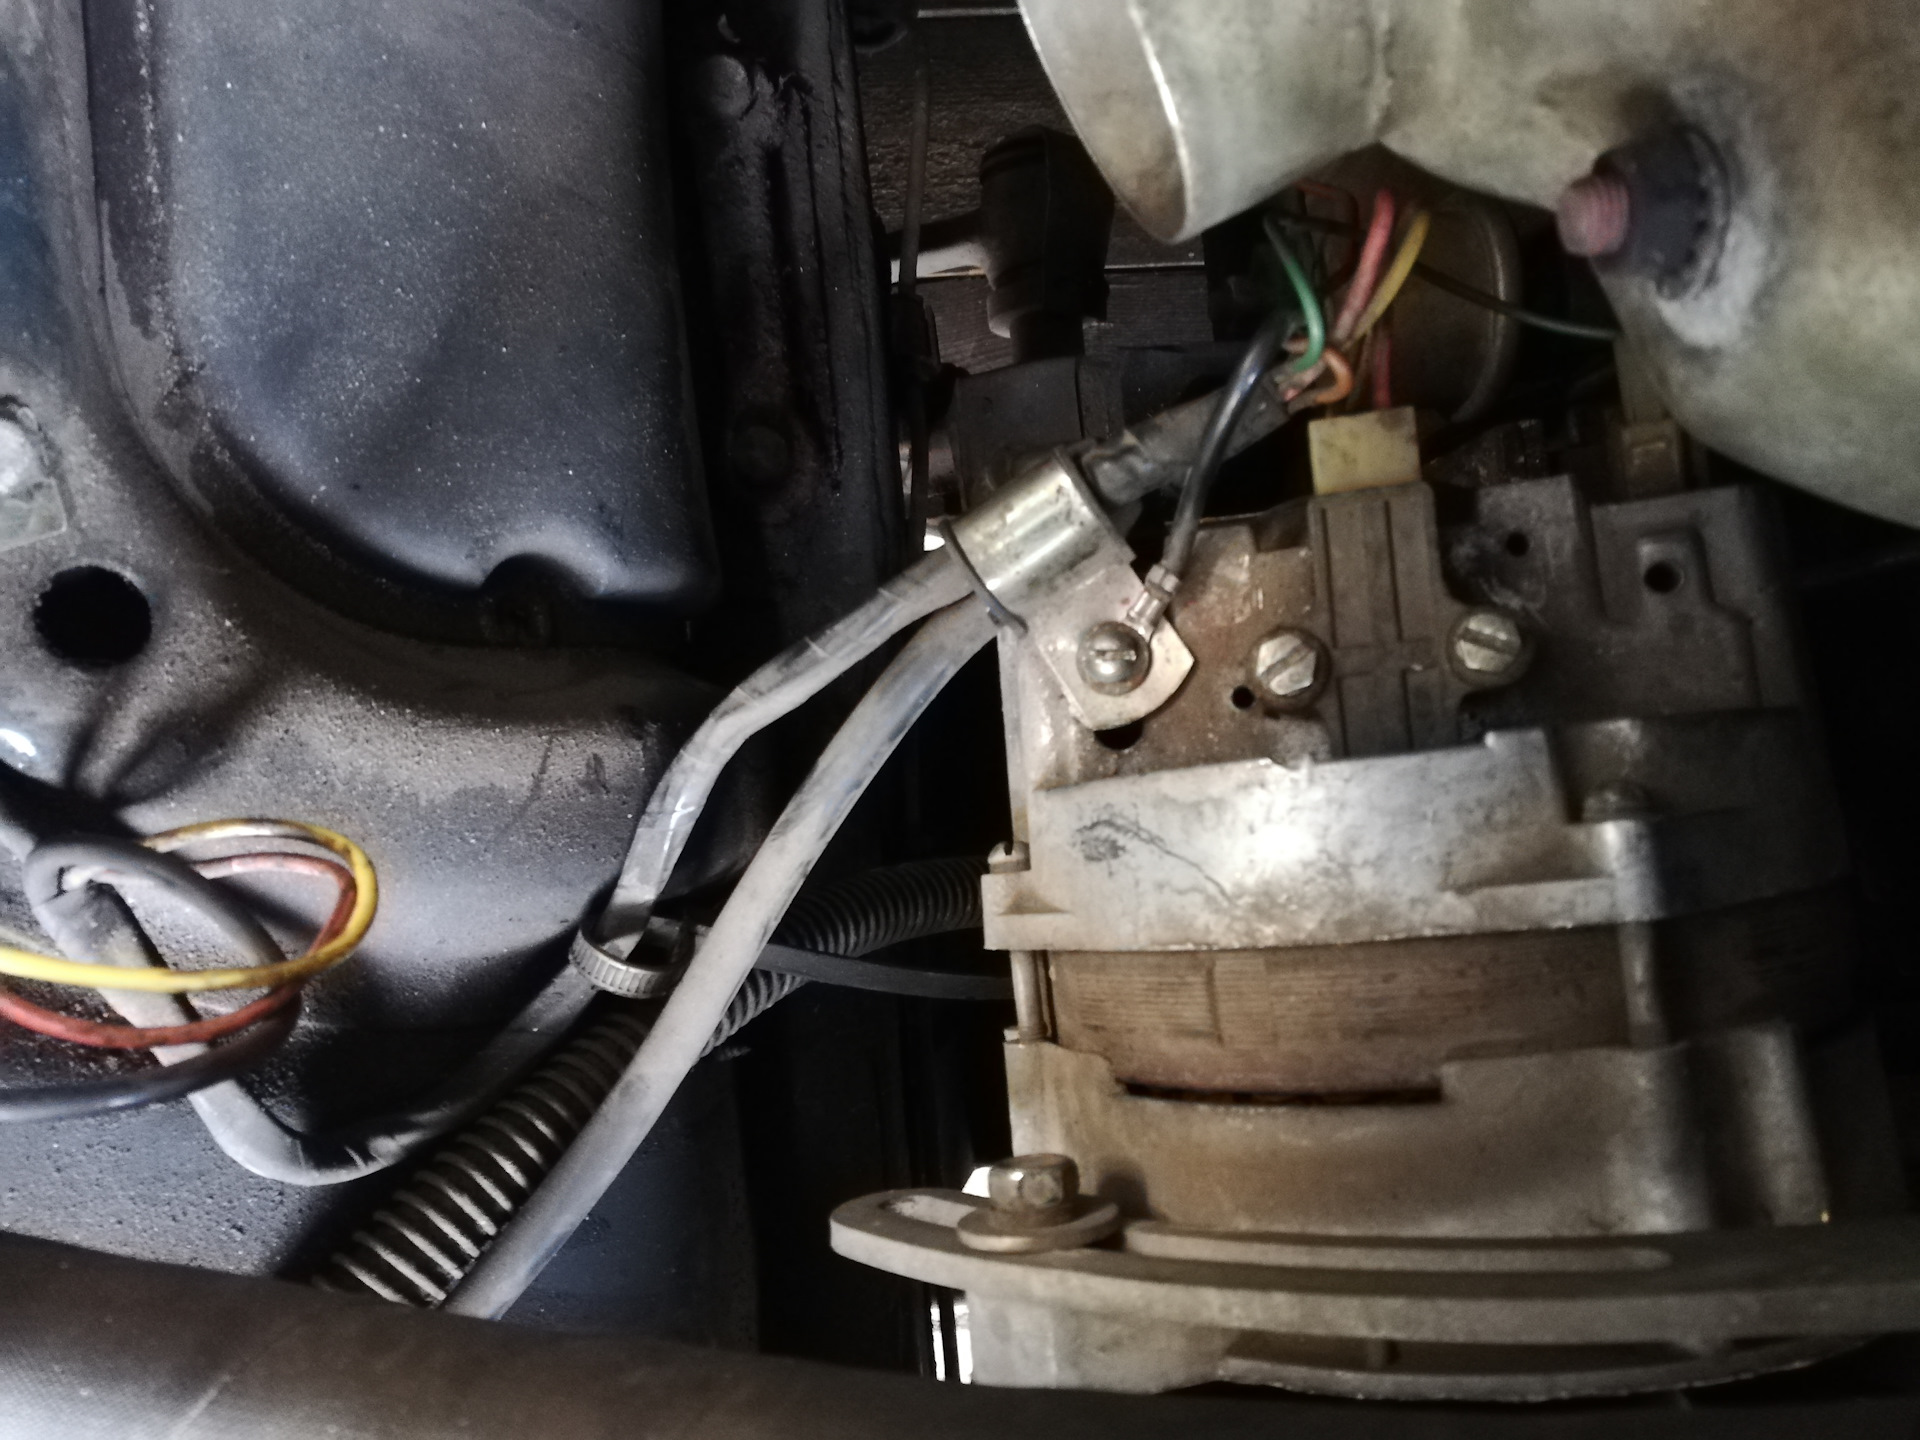 Почему не идет зарядка на аккумулятор и горит лампа автомобильной акб: ремонт зарядного устройства